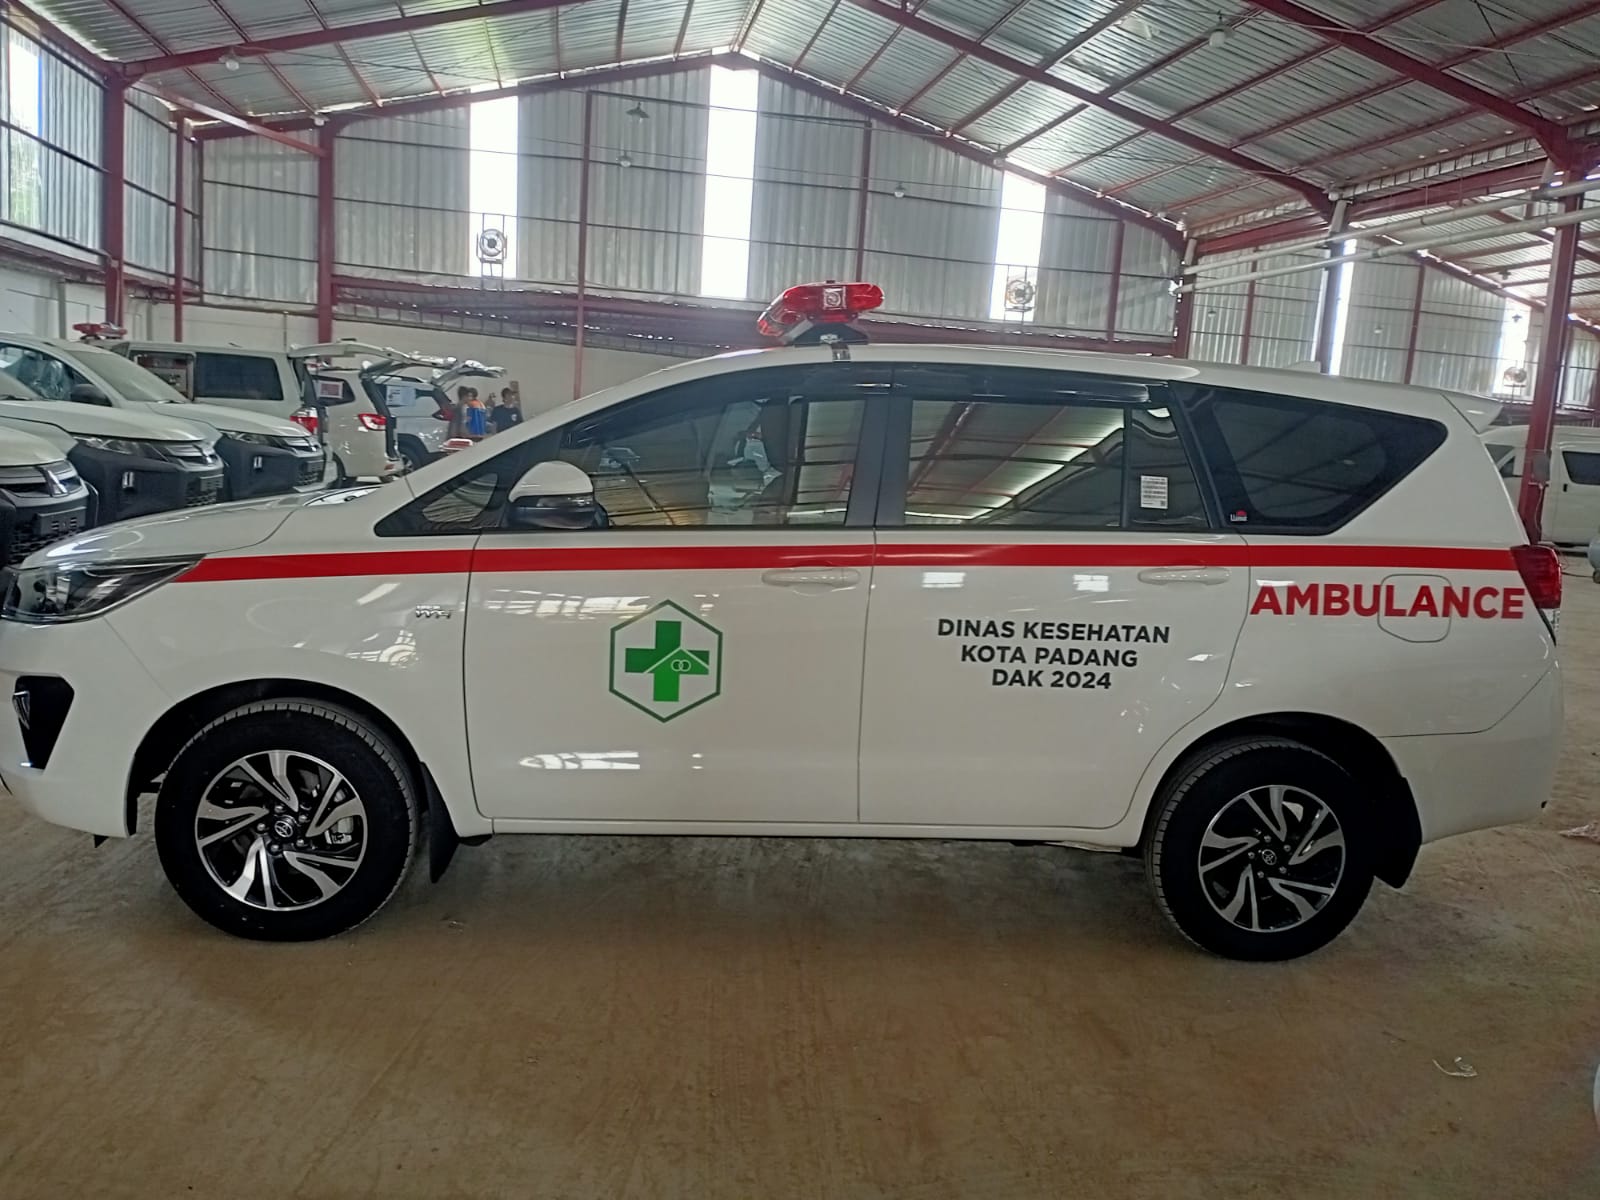 Harga Bengkel Karoseri Ambulance Berkualitas Sidoarjo